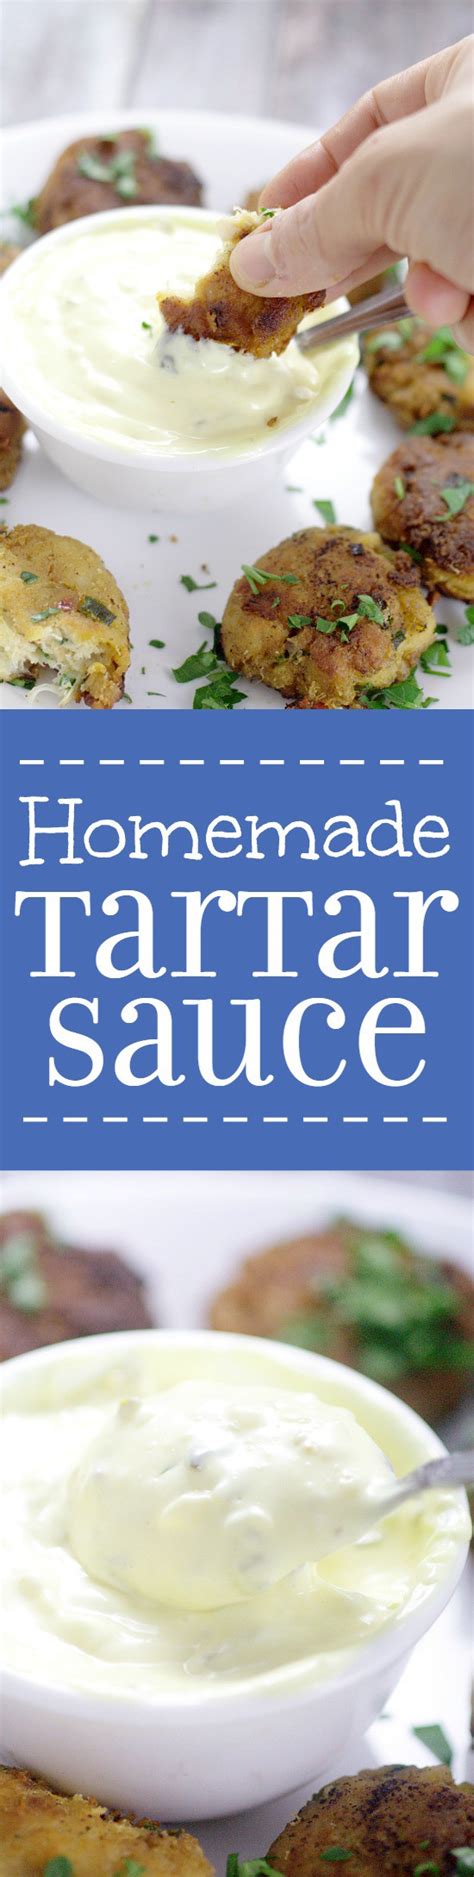 Homemade Tartar Sauce The Gracious Wife